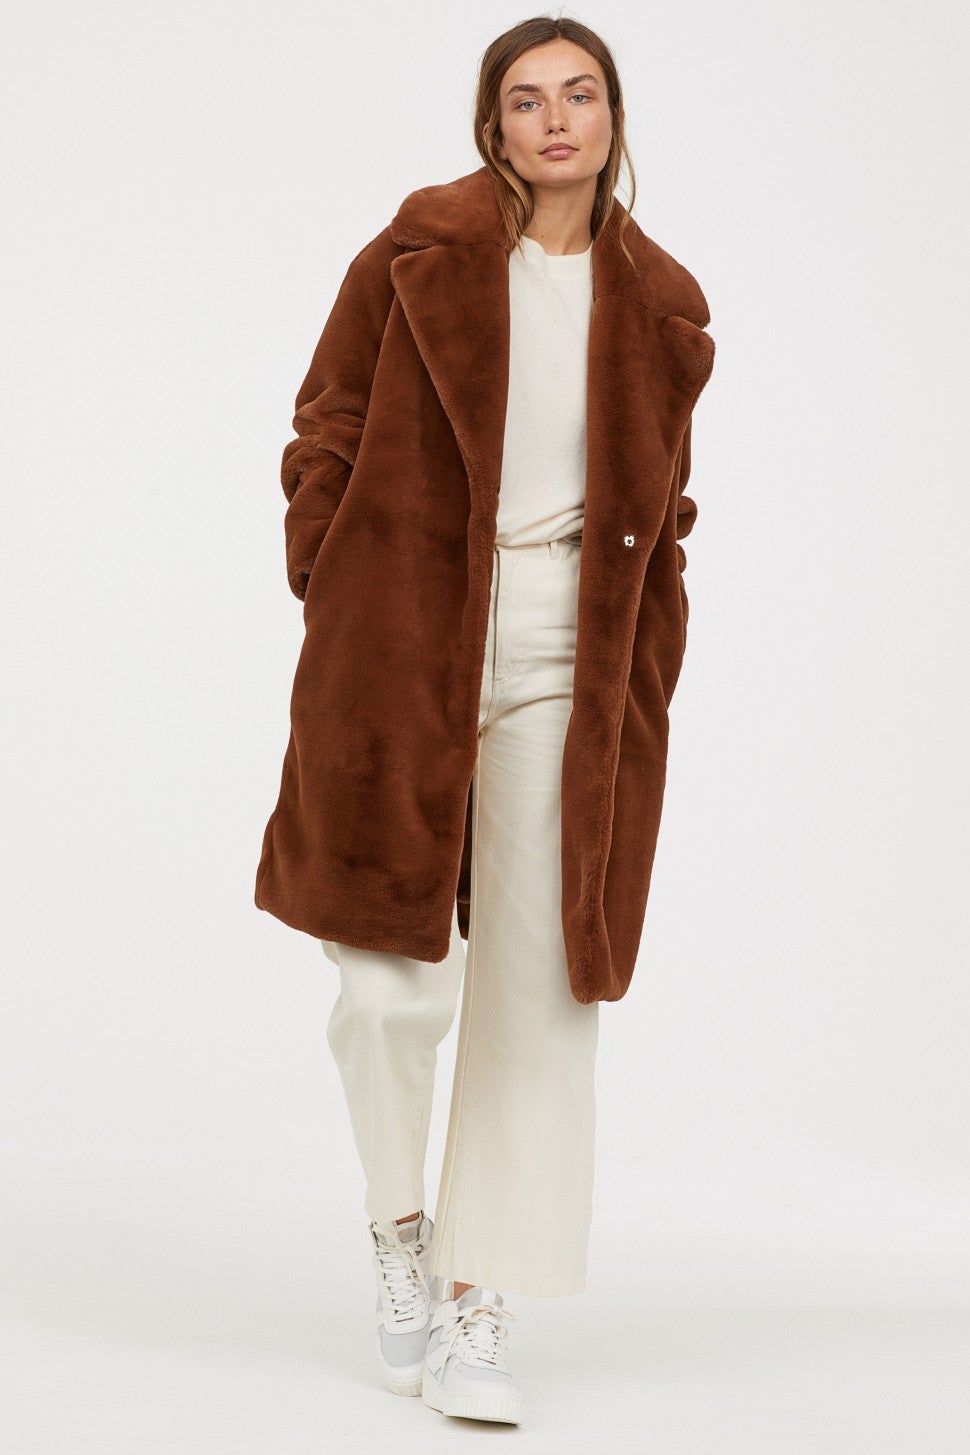 H&M faux fur coat